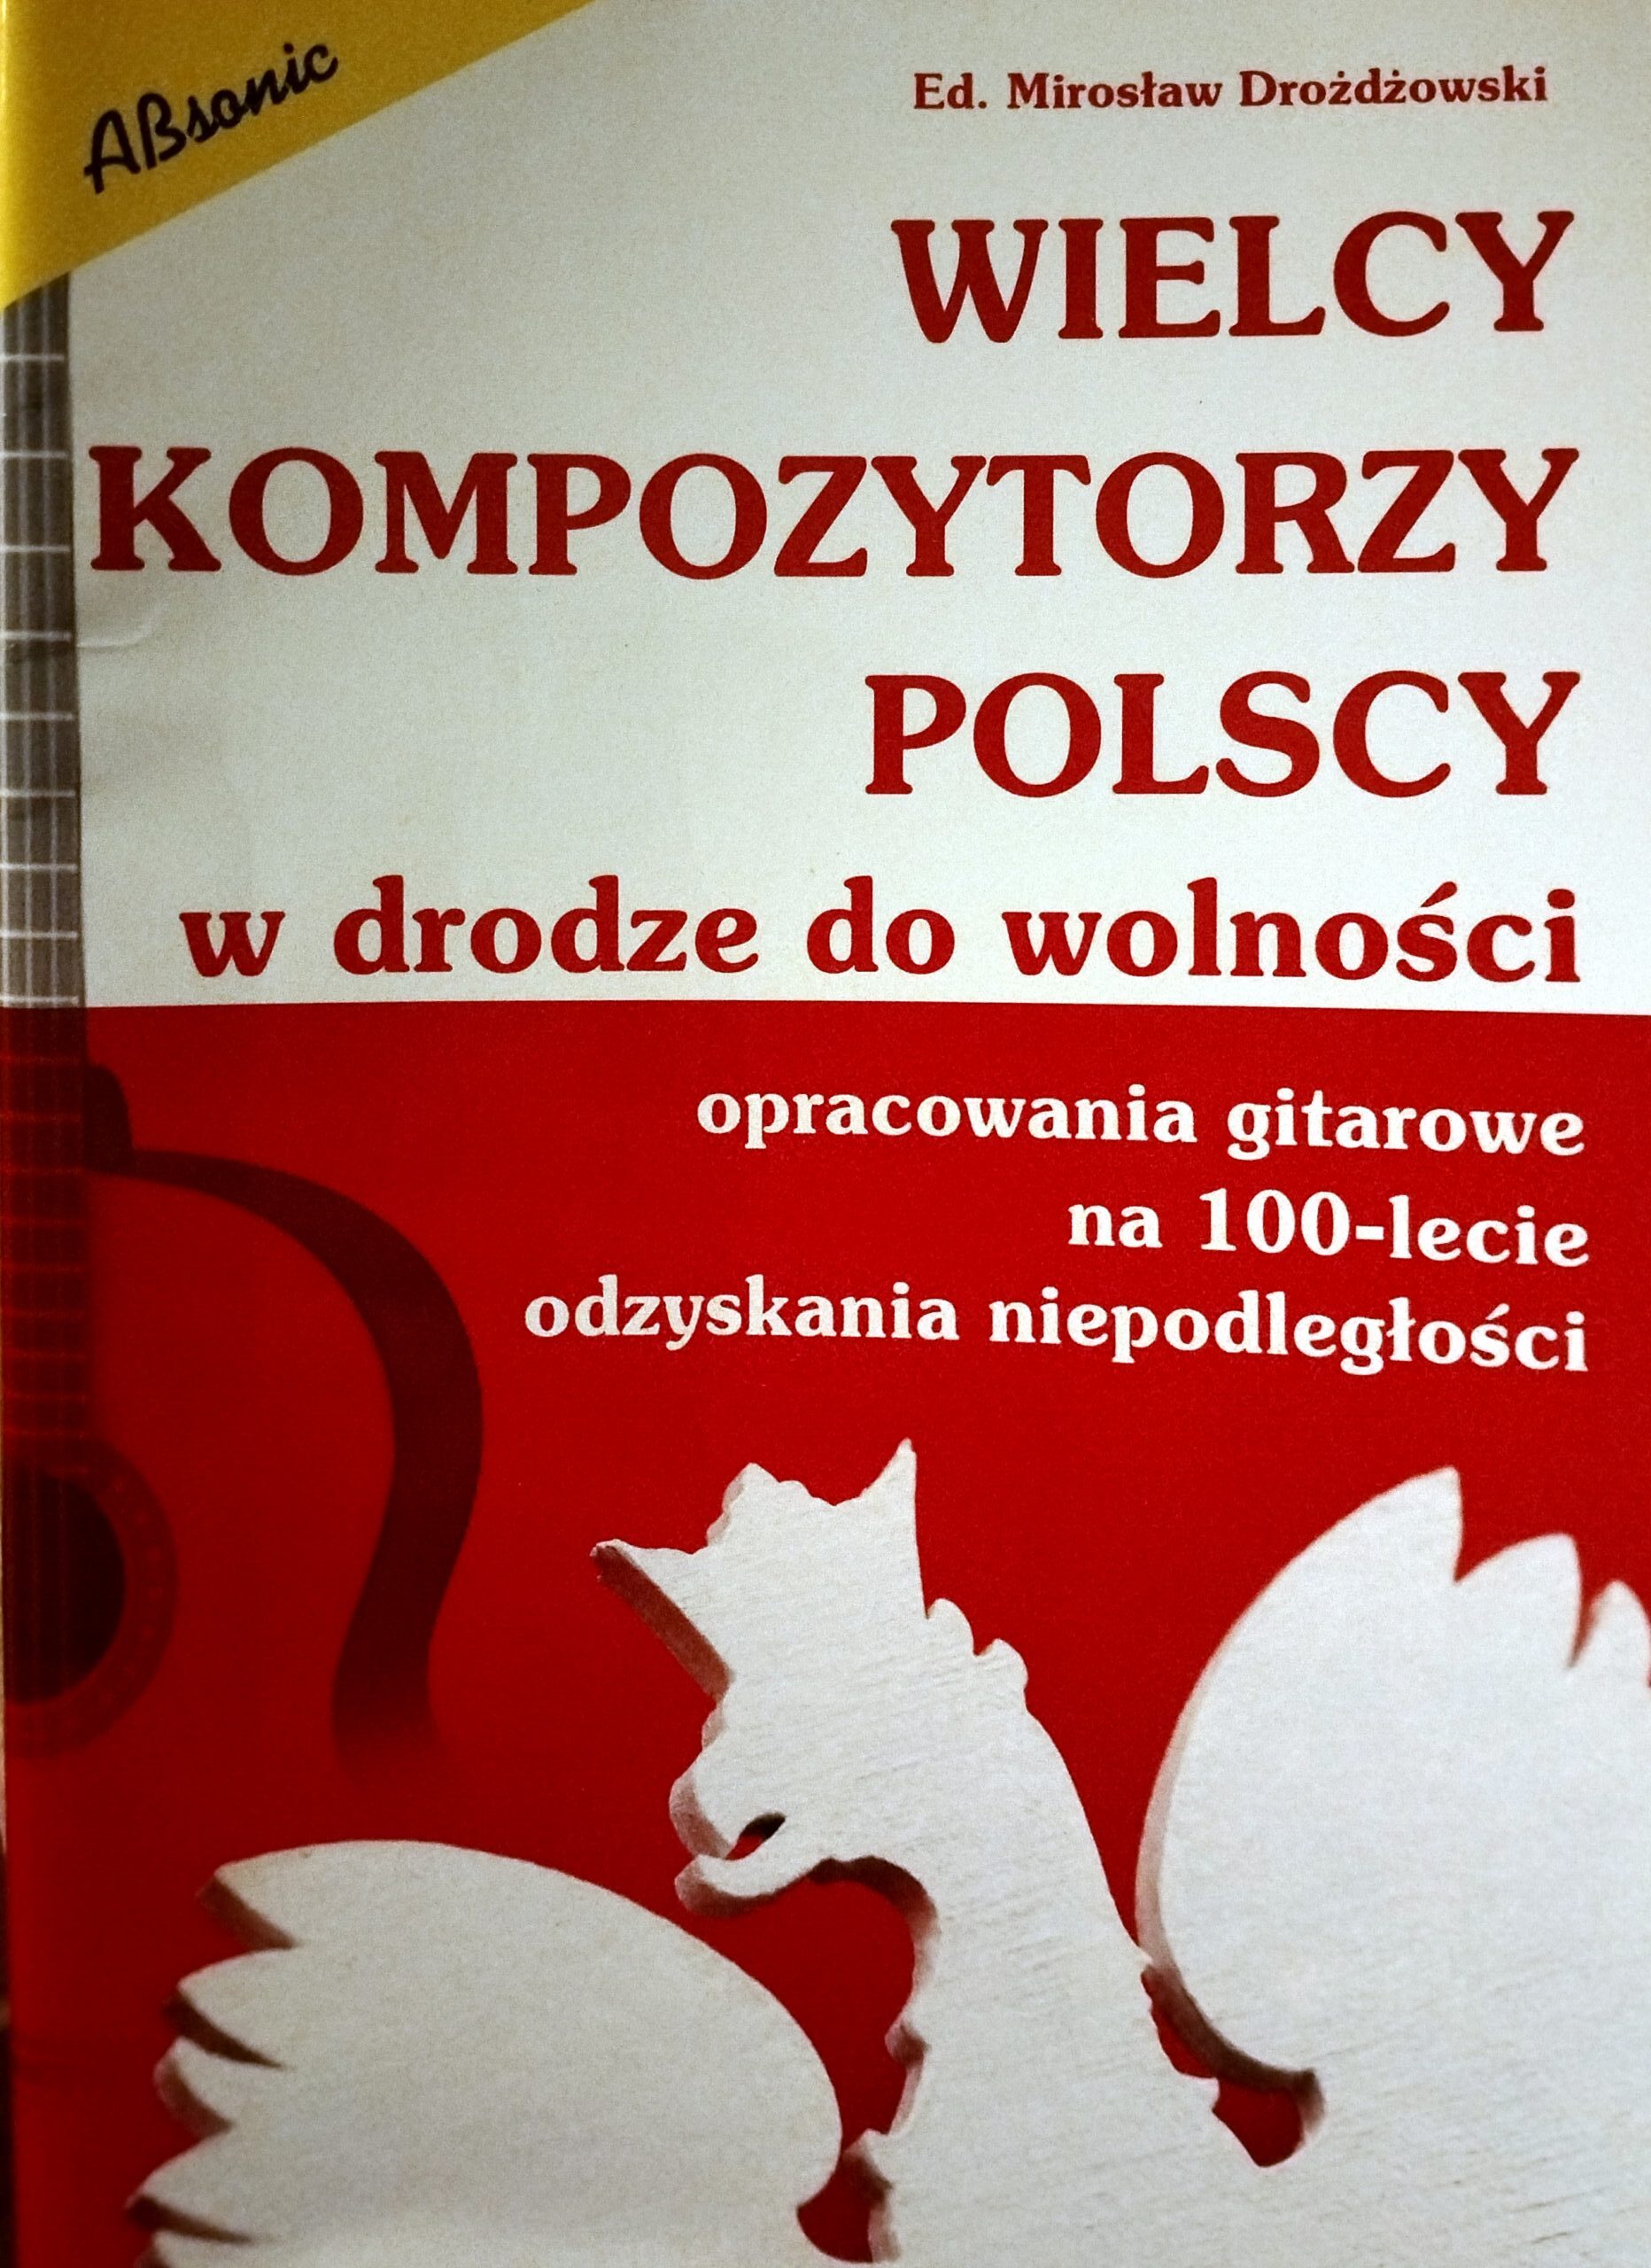 Wielcy kompozytorzy polscy -ed.Mirosław Drożdżowski, wyd.Absonic